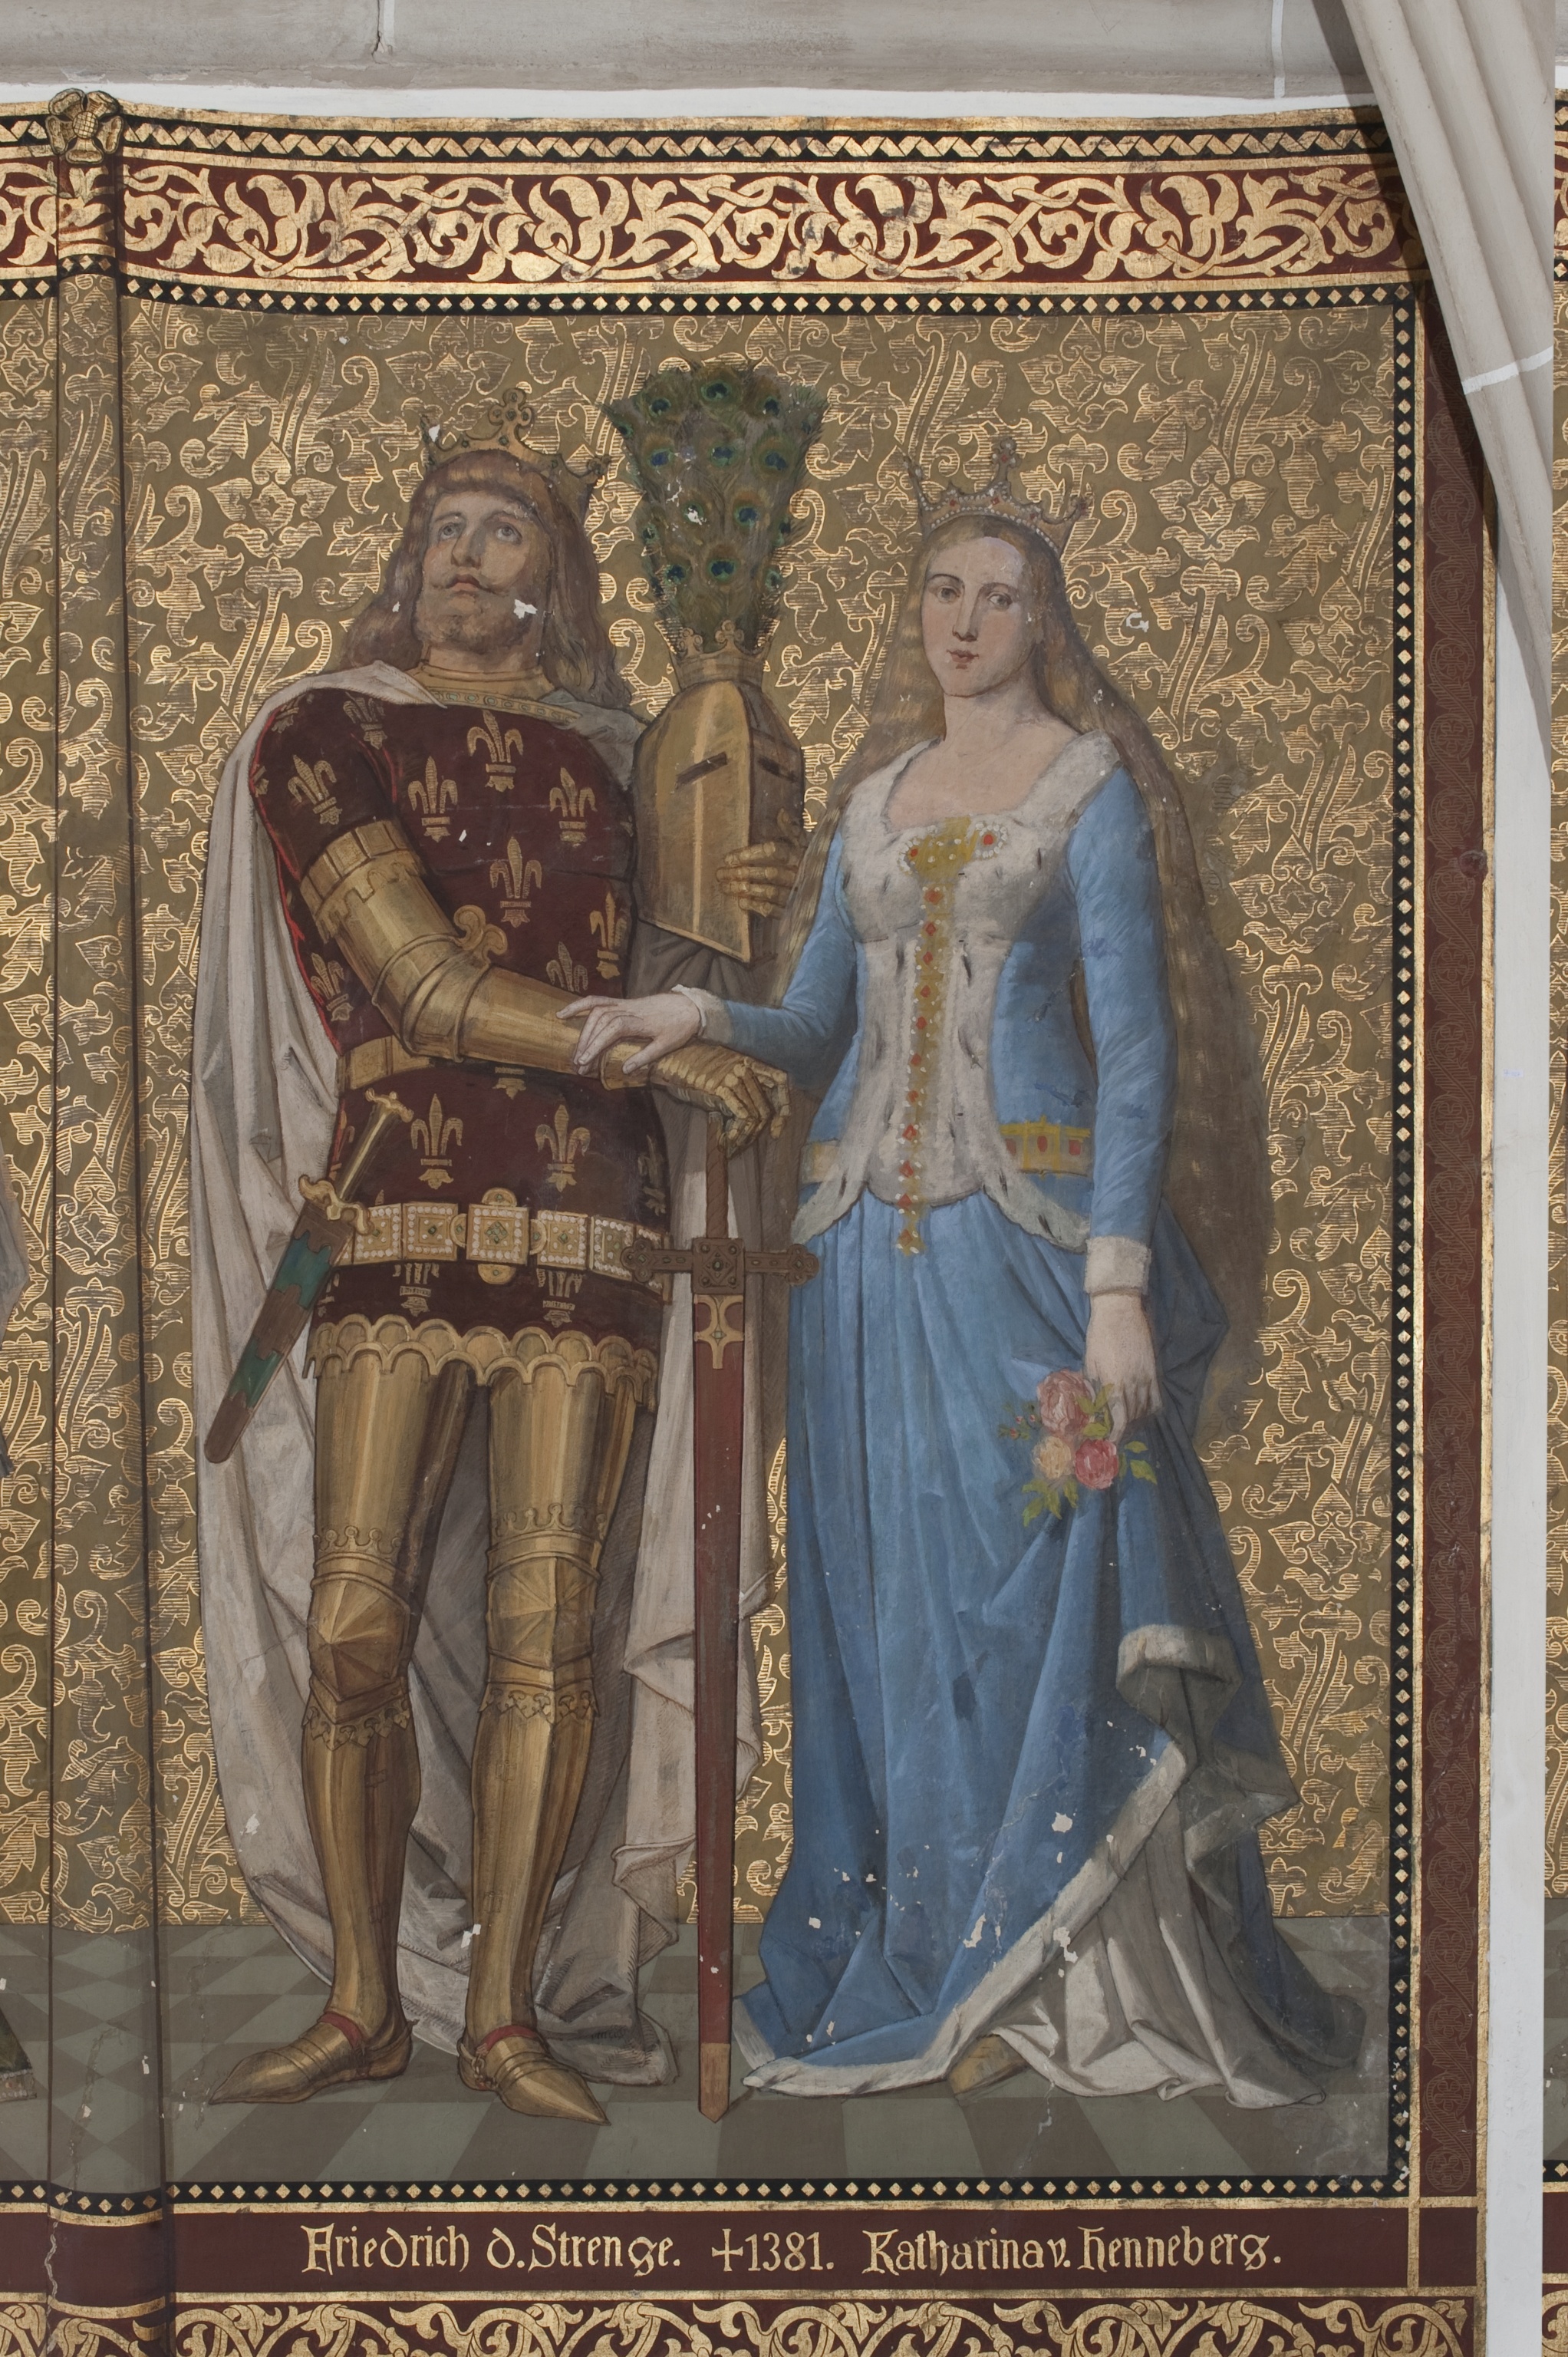 Wandbild:
"Friedrich der Strenge und Katharina von Henneberg" (SBG gGmbH CC BY-NC-SA)